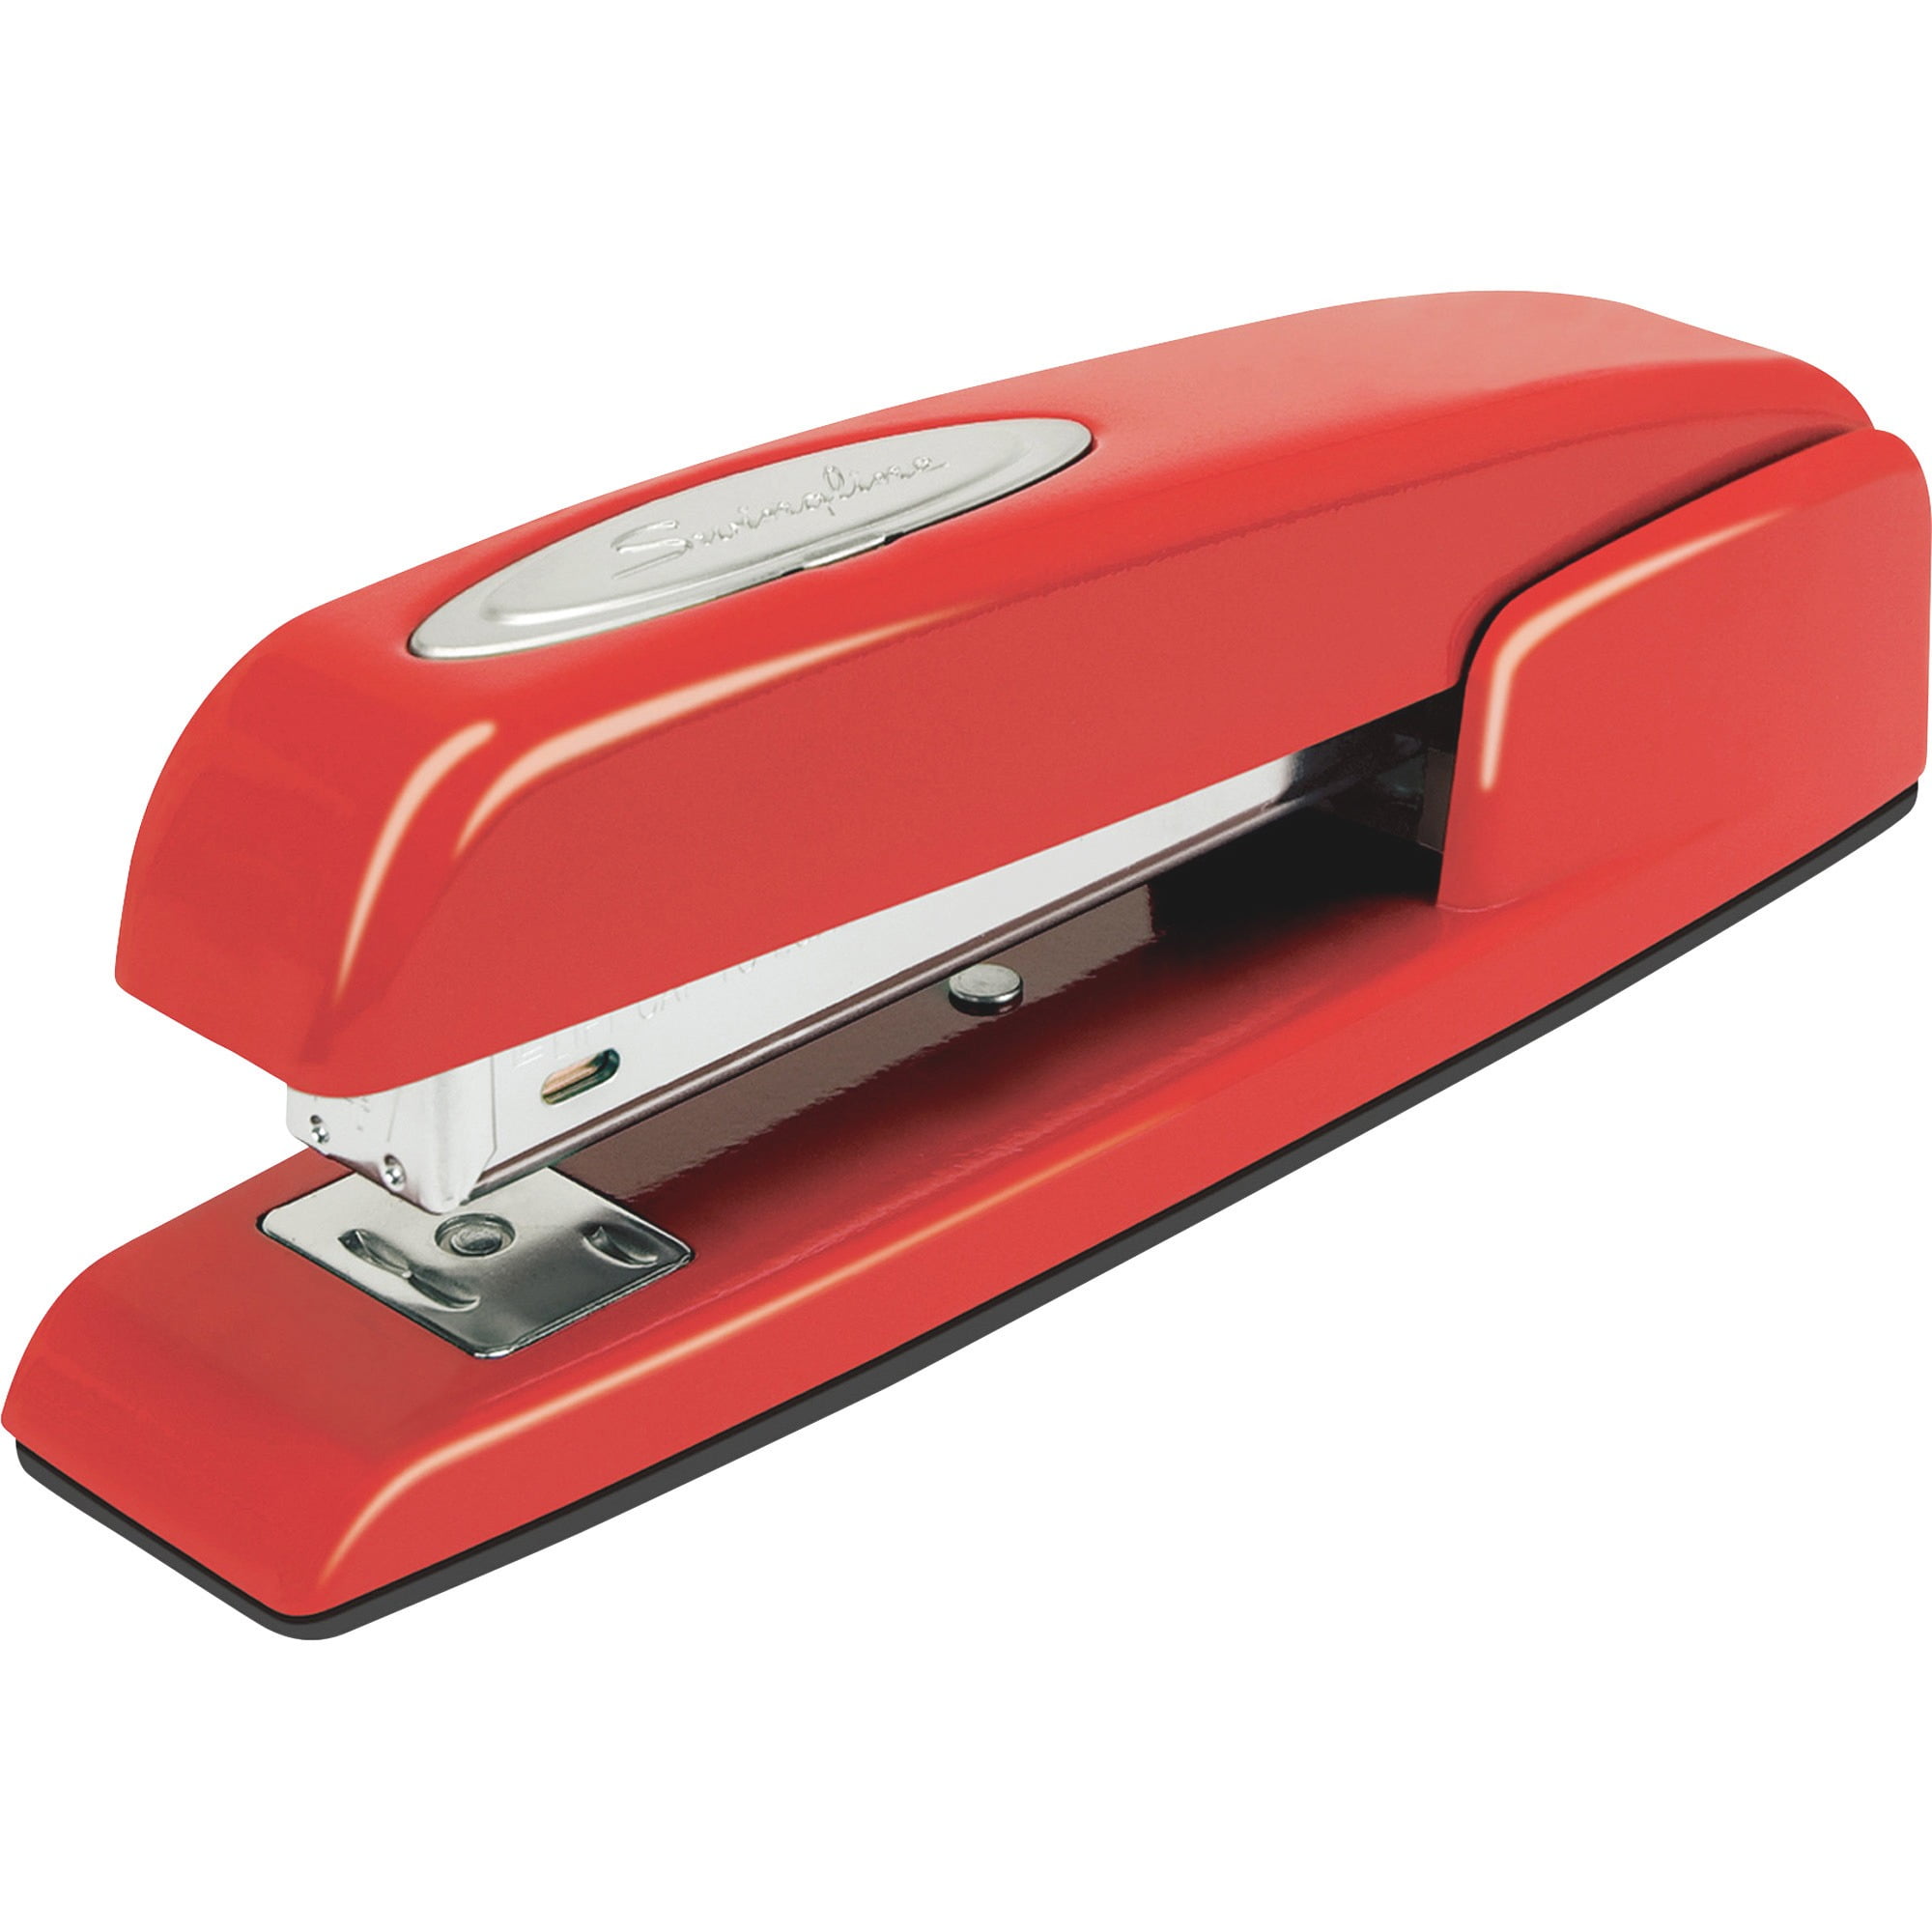 staples swingline stapler